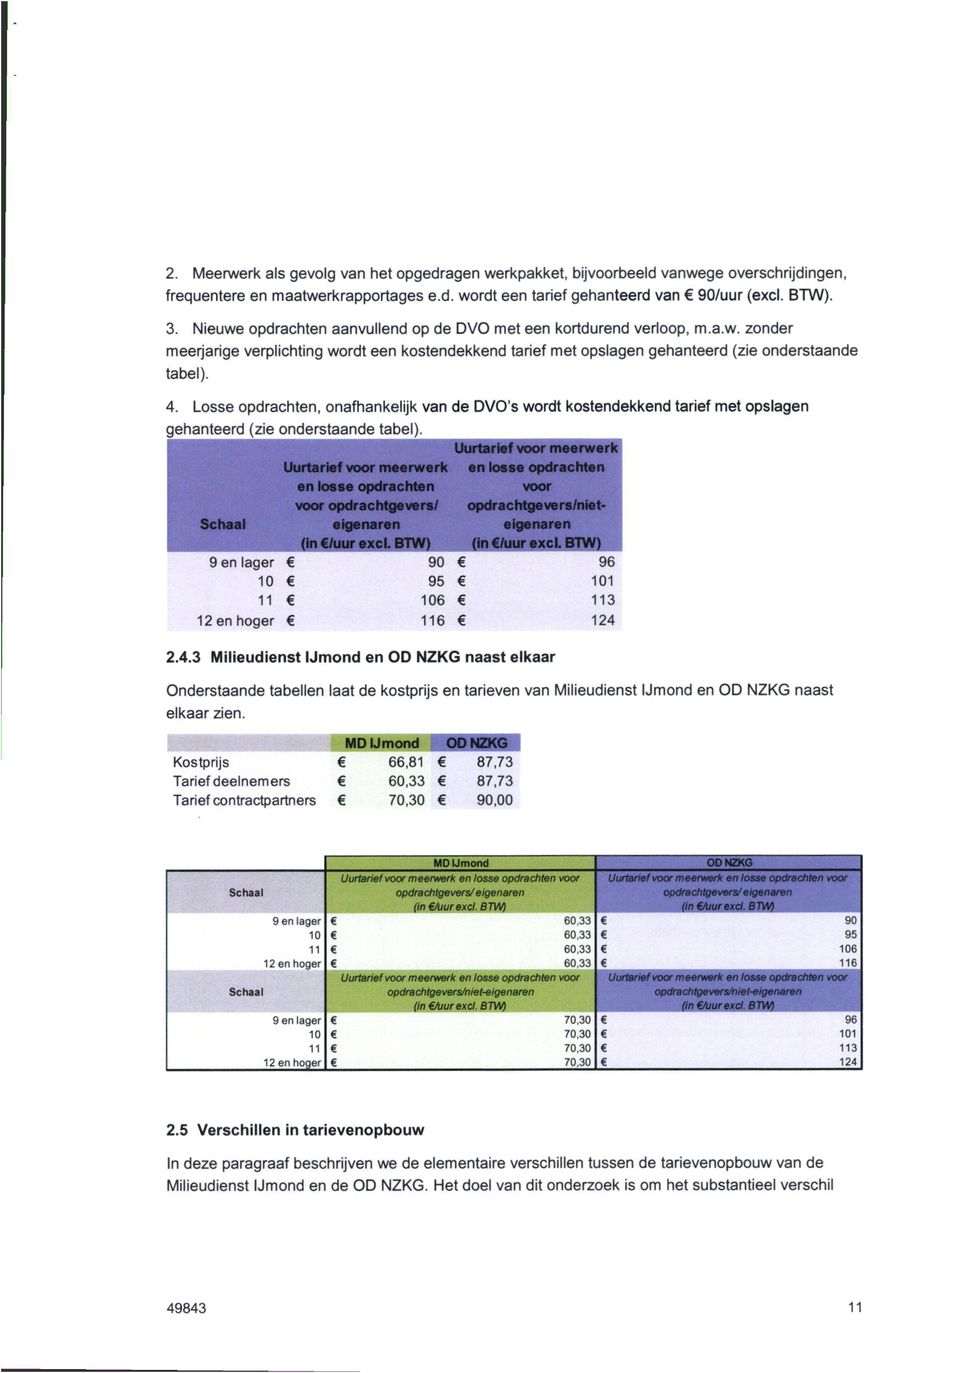 Losse opdrachten, onafhankelijk van de DVO's wordt kostendekkend tarief met opslagen gehanteerd (zie onderstaande tabel).